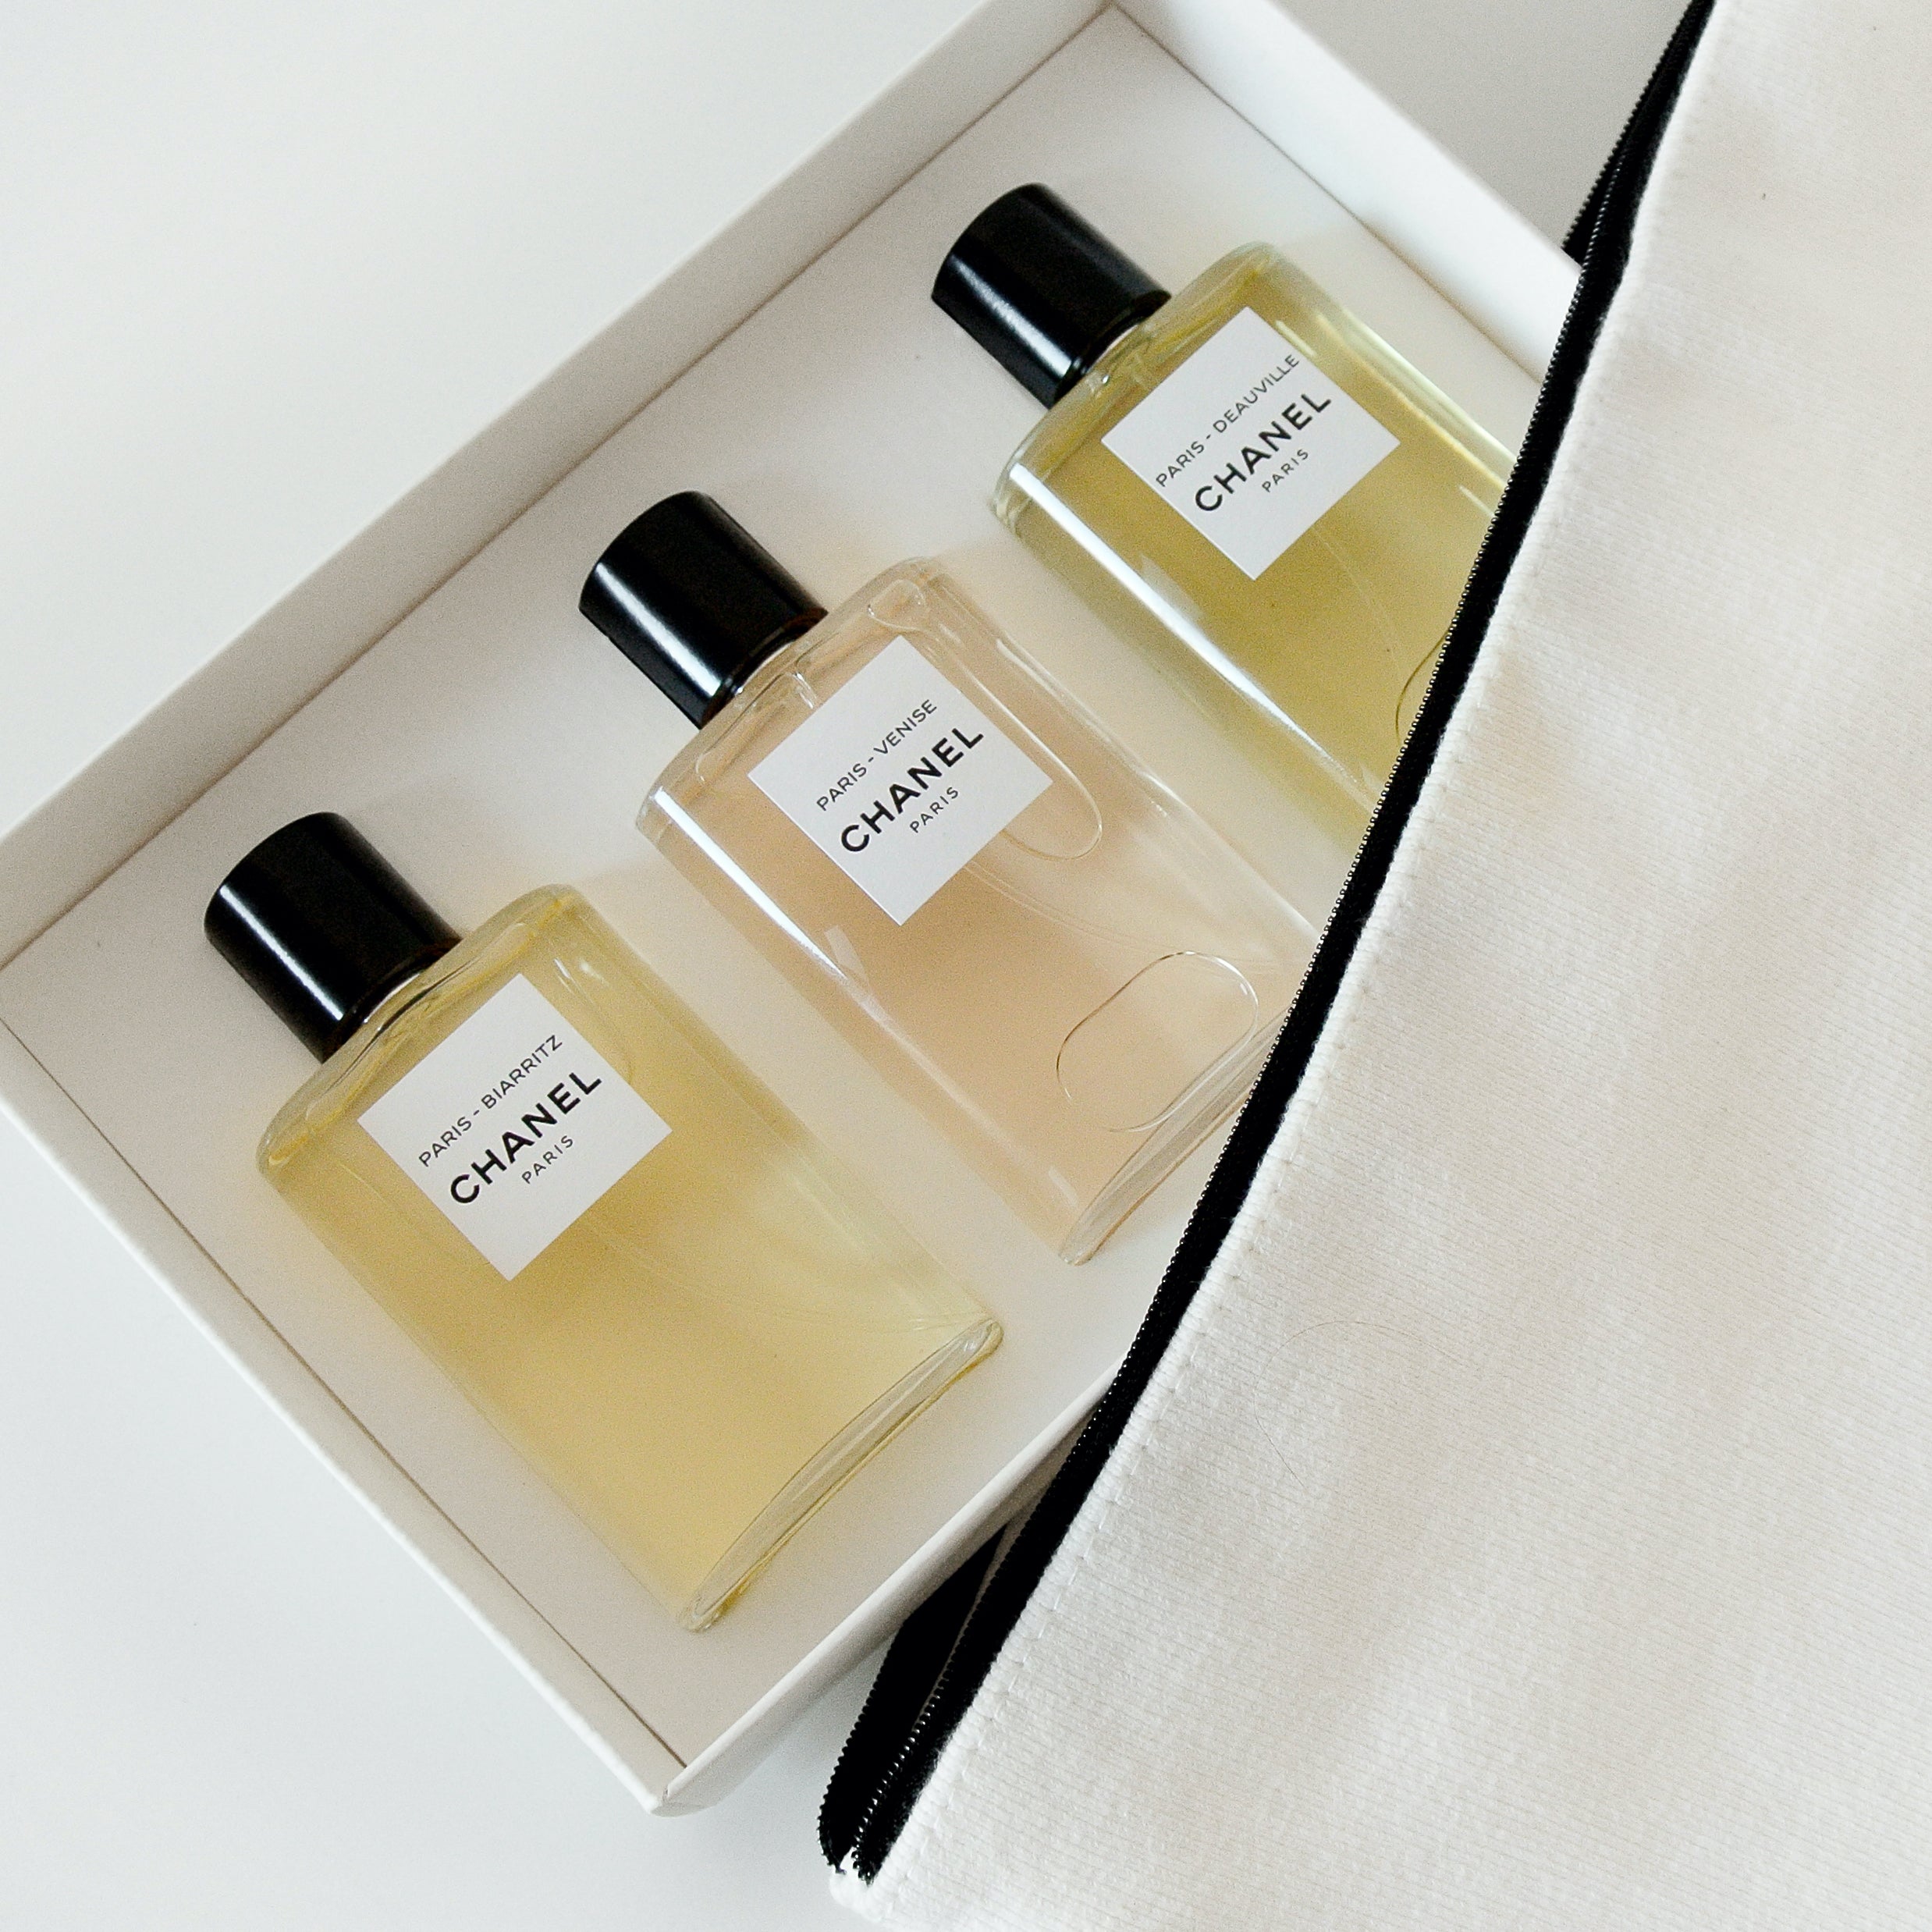 Chanel Les Eaux De Chanel Travel Set | My Perfume Shop Australia